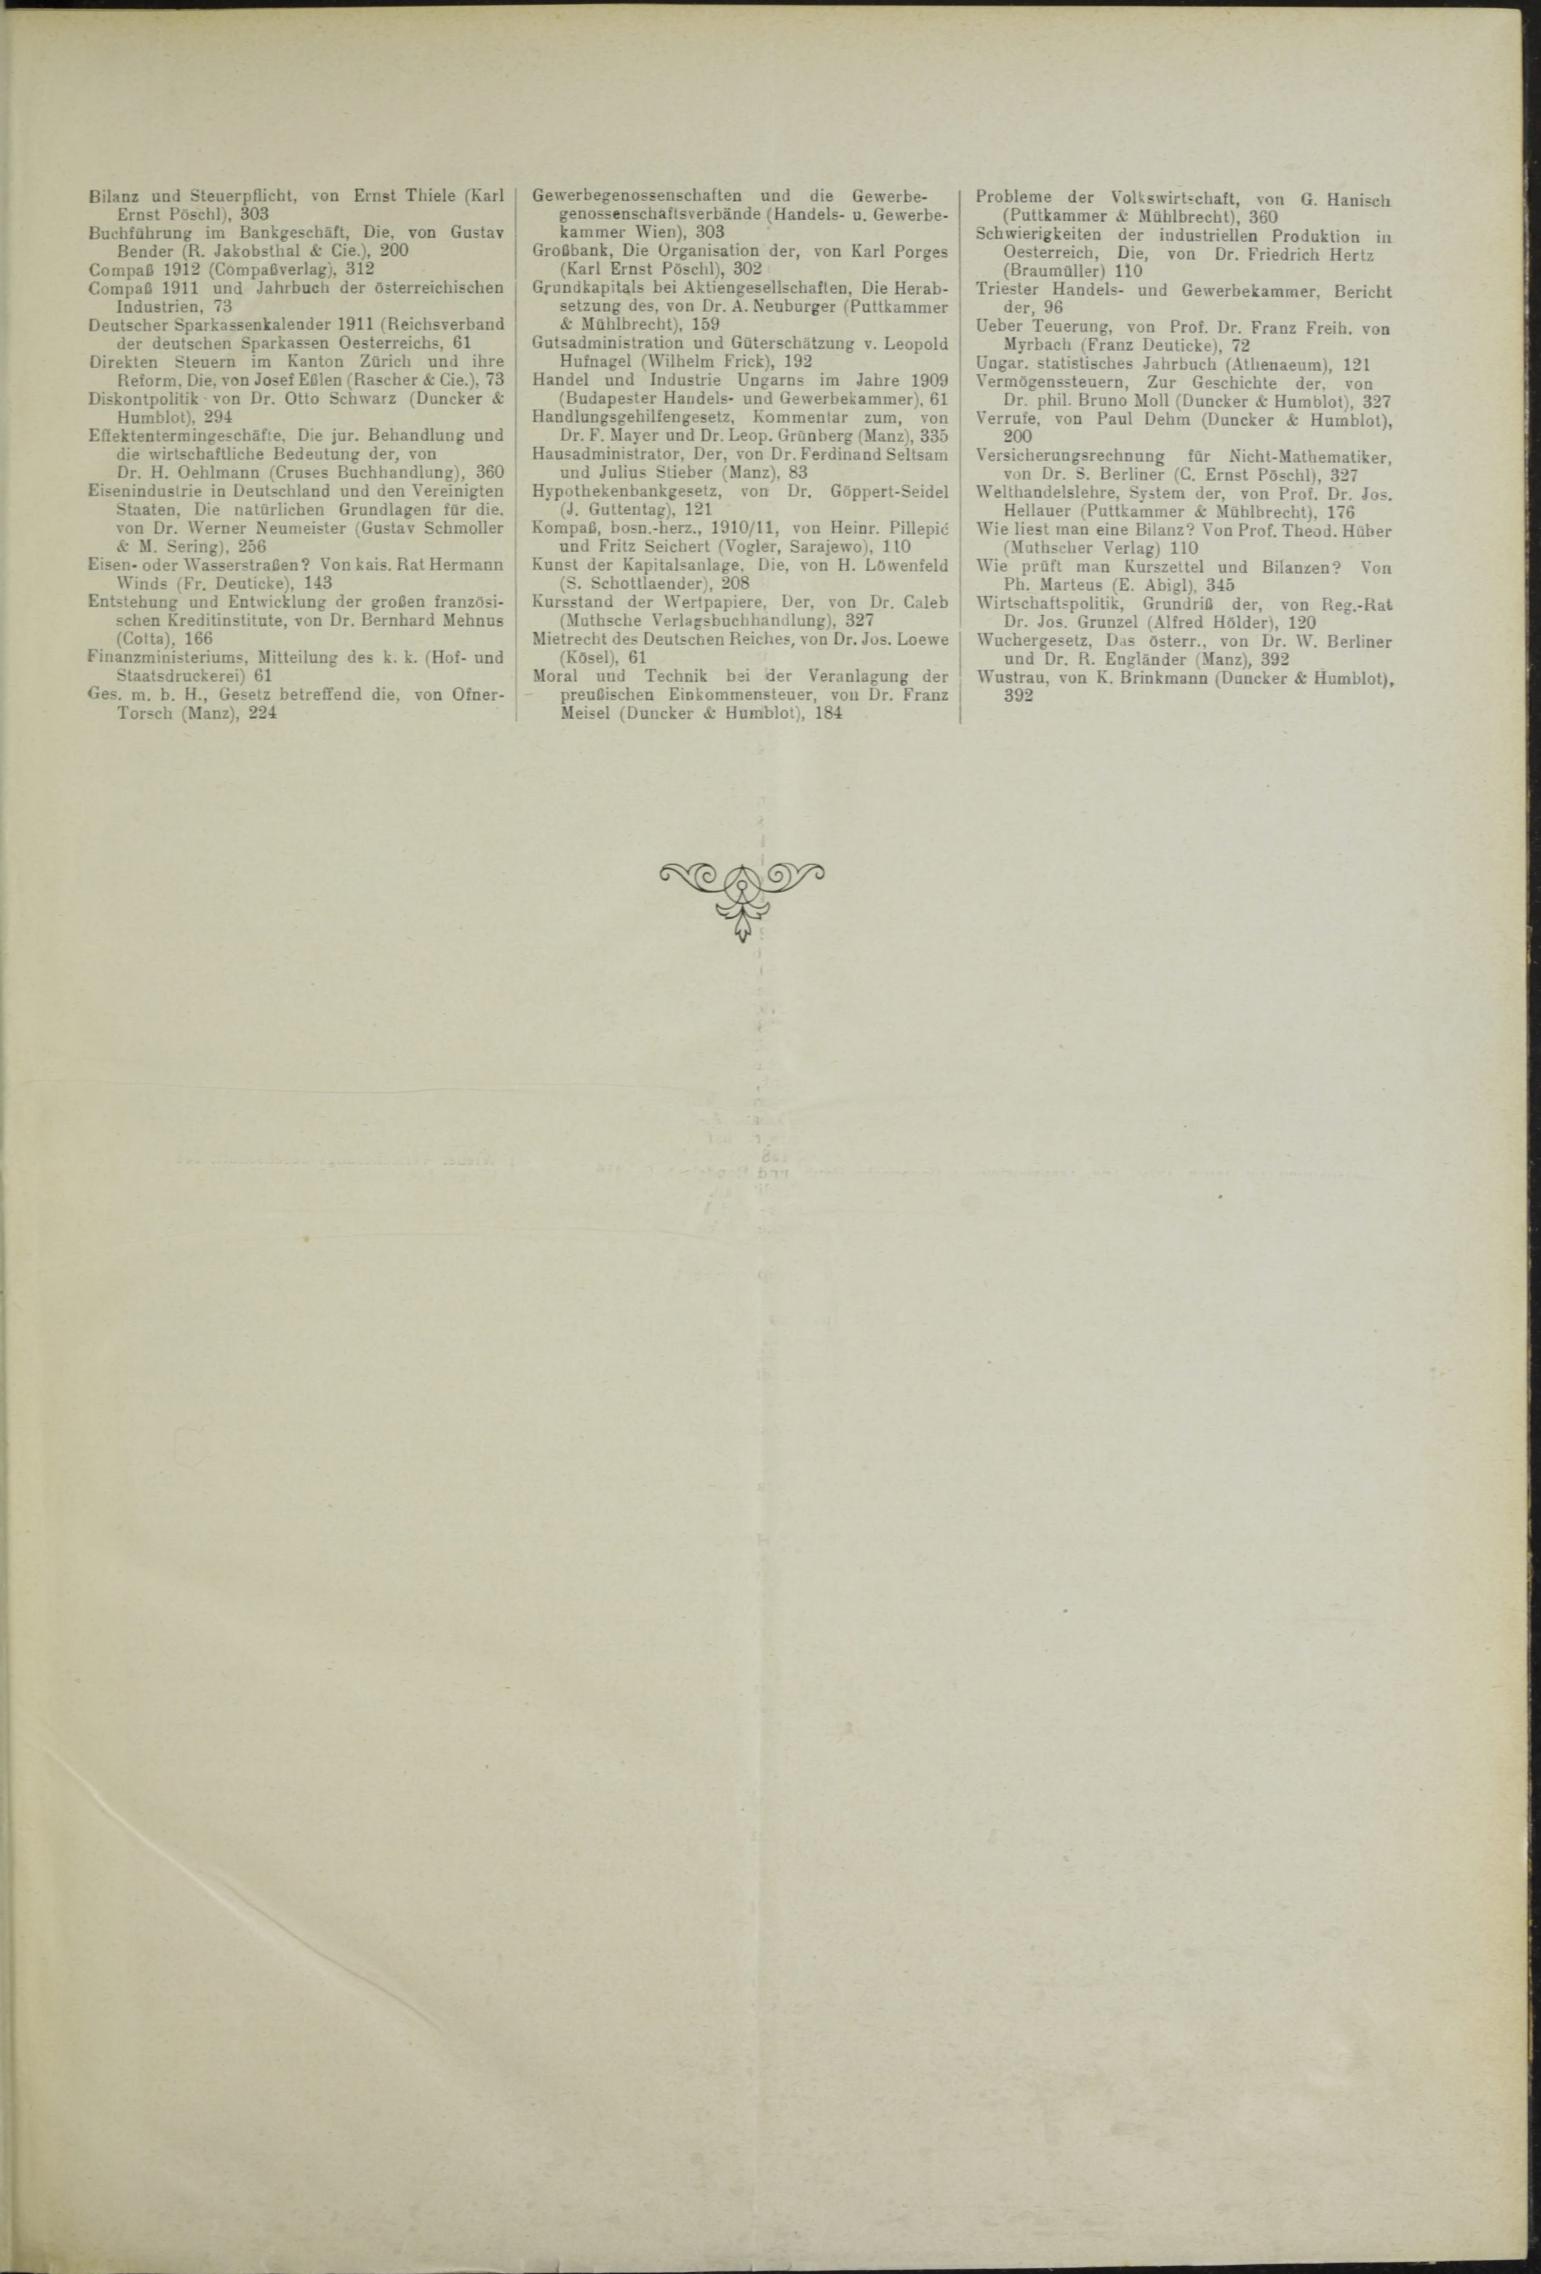 Der Tresor 27.05.1911 - Seite 11